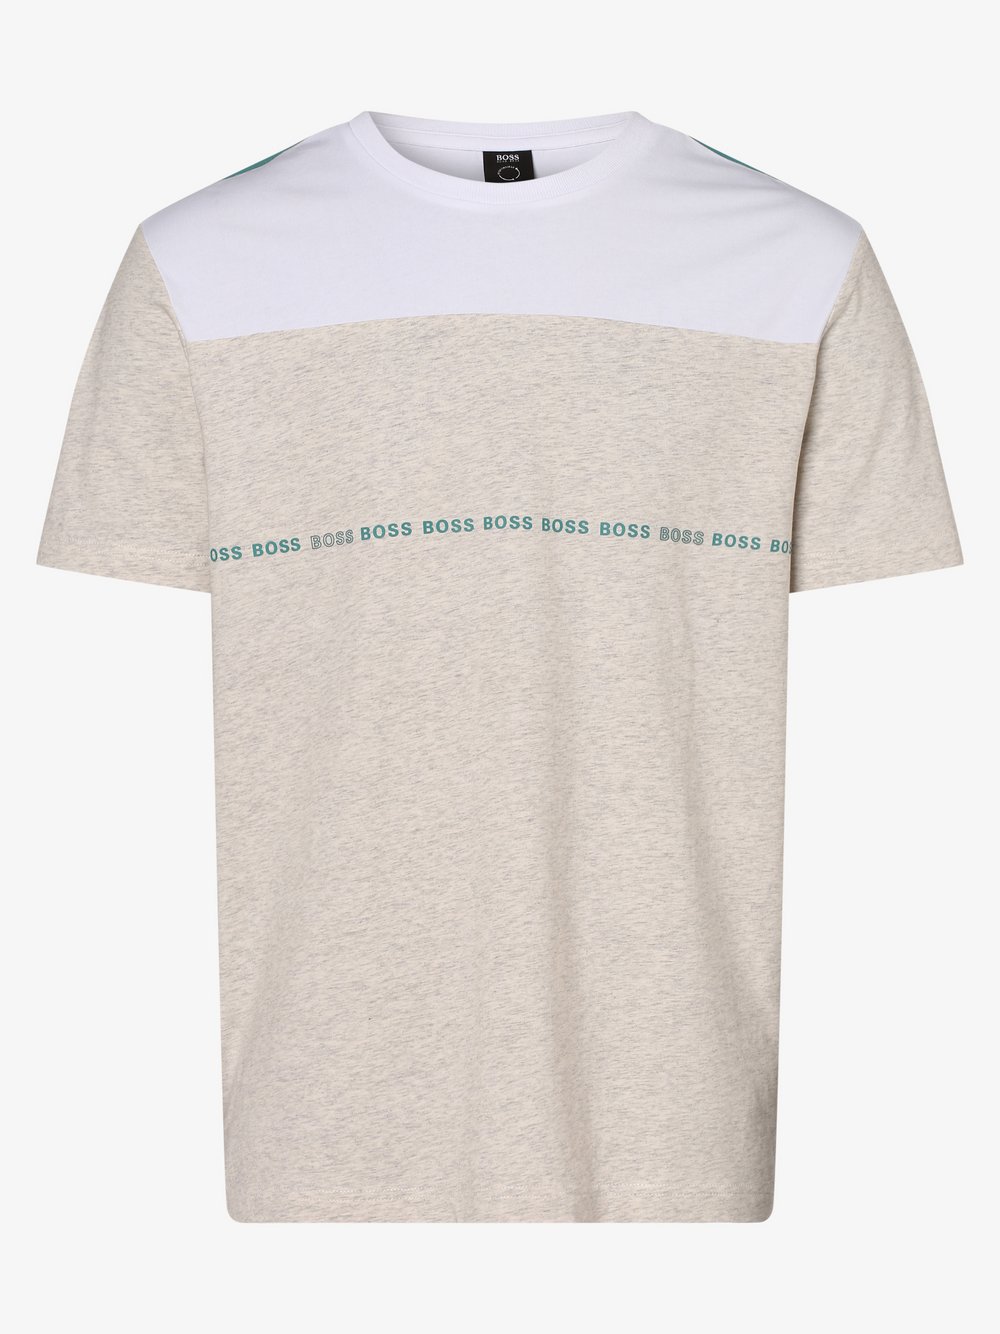 BOSS Athleisure - T-shirt męski – Tee 5, szary